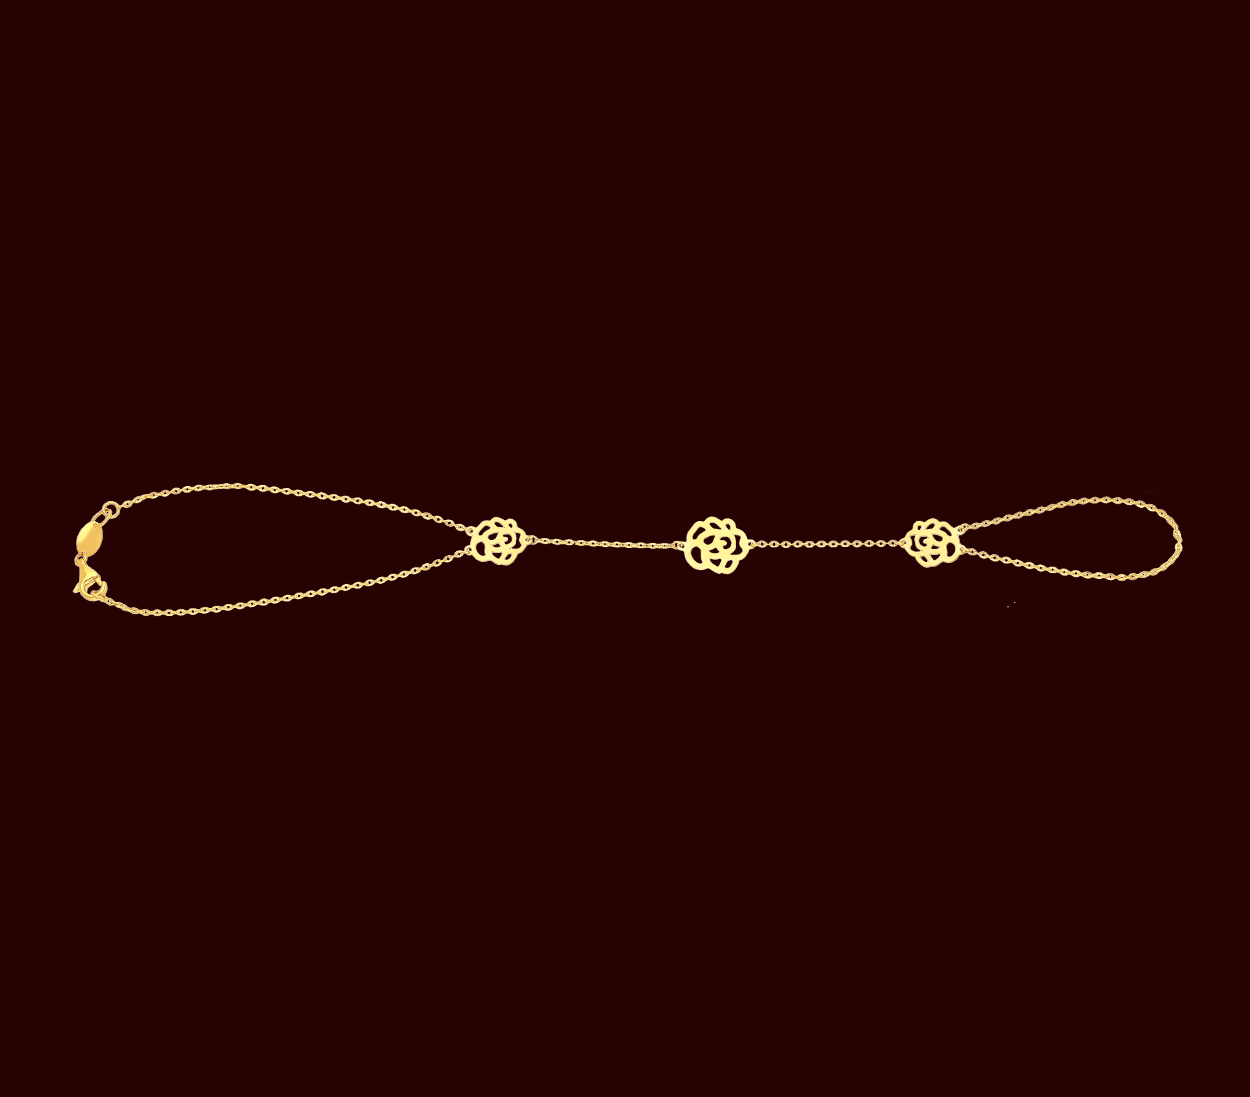 Haven Heart Gold Chain Bracelet in Multi Mix | Kendra Scott